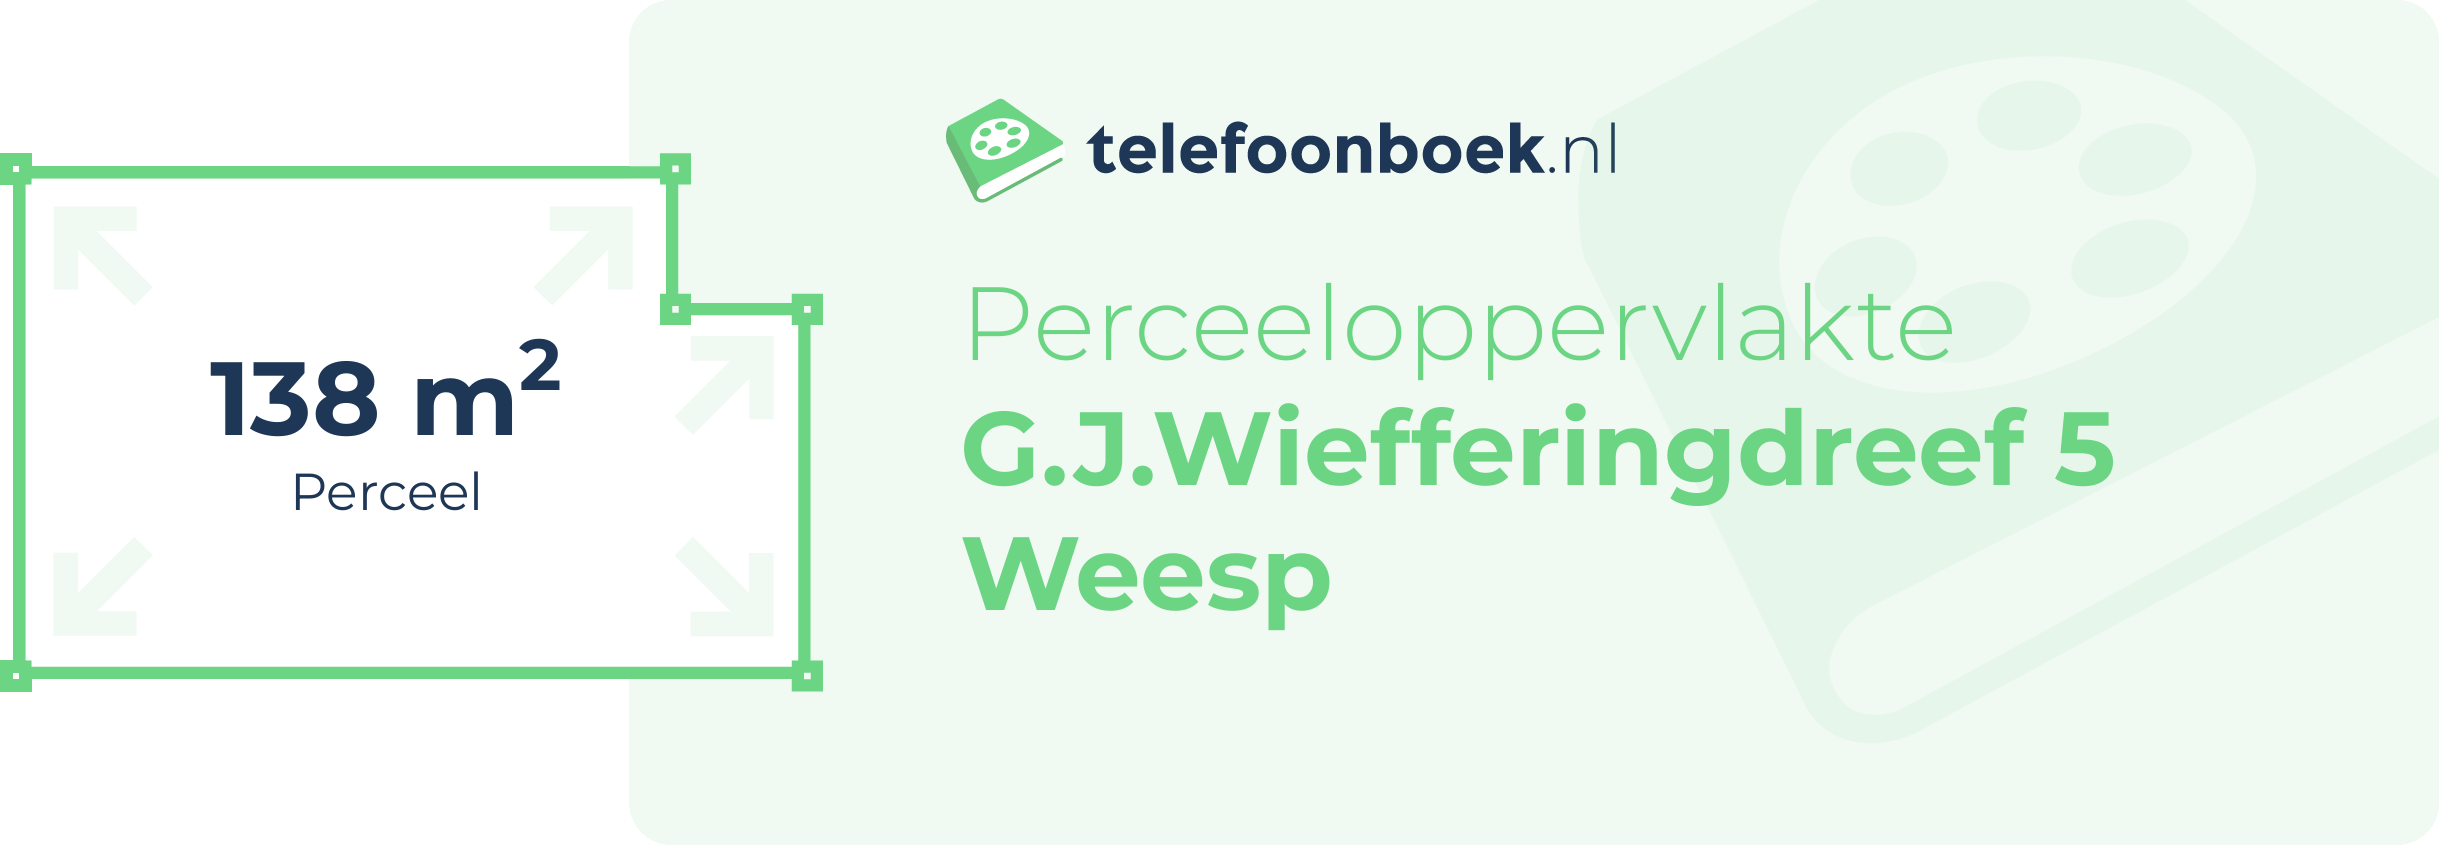 Perceeloppervlakte G.J.Wiefferingdreef 5 Weesp